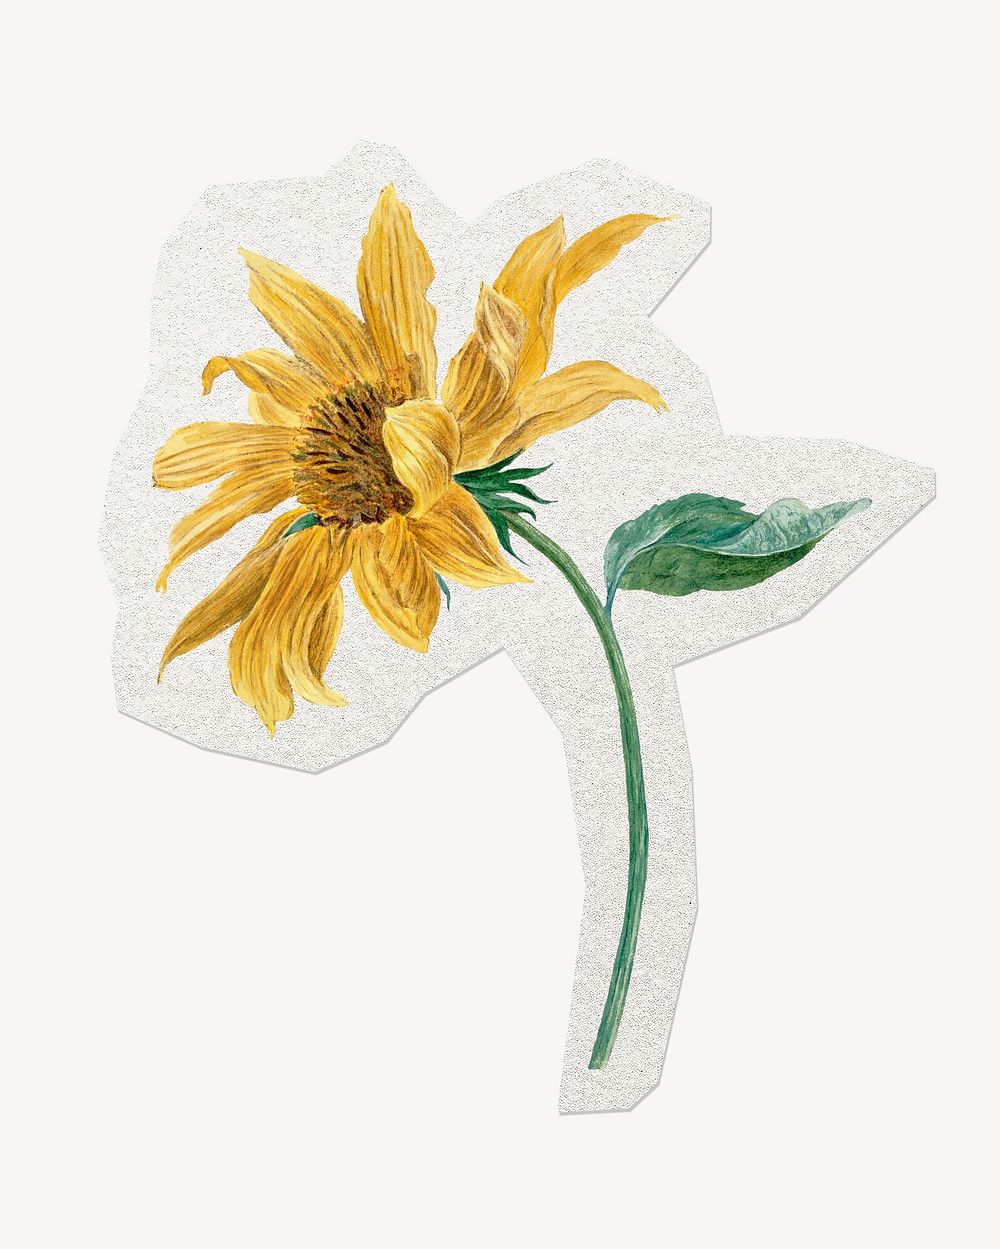 Vintage flower sticker, journal collage element